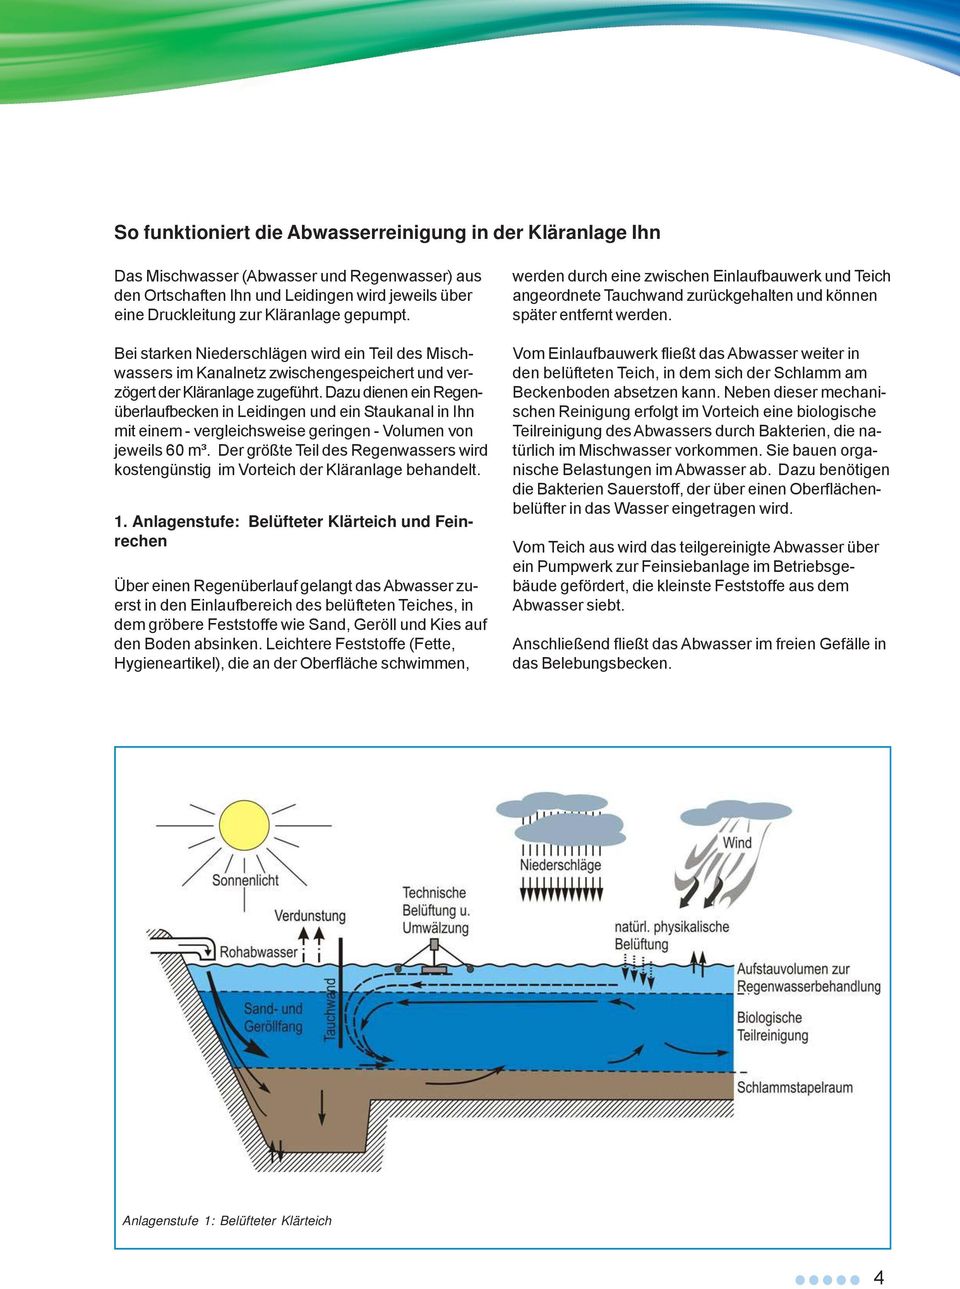 Dazu dienen ein Regenüberlaufbecken in Leidingen und ein Staukanal in Ihn mit einem - vergleichsweise geringen - Volumen von jeweils 60 m³.